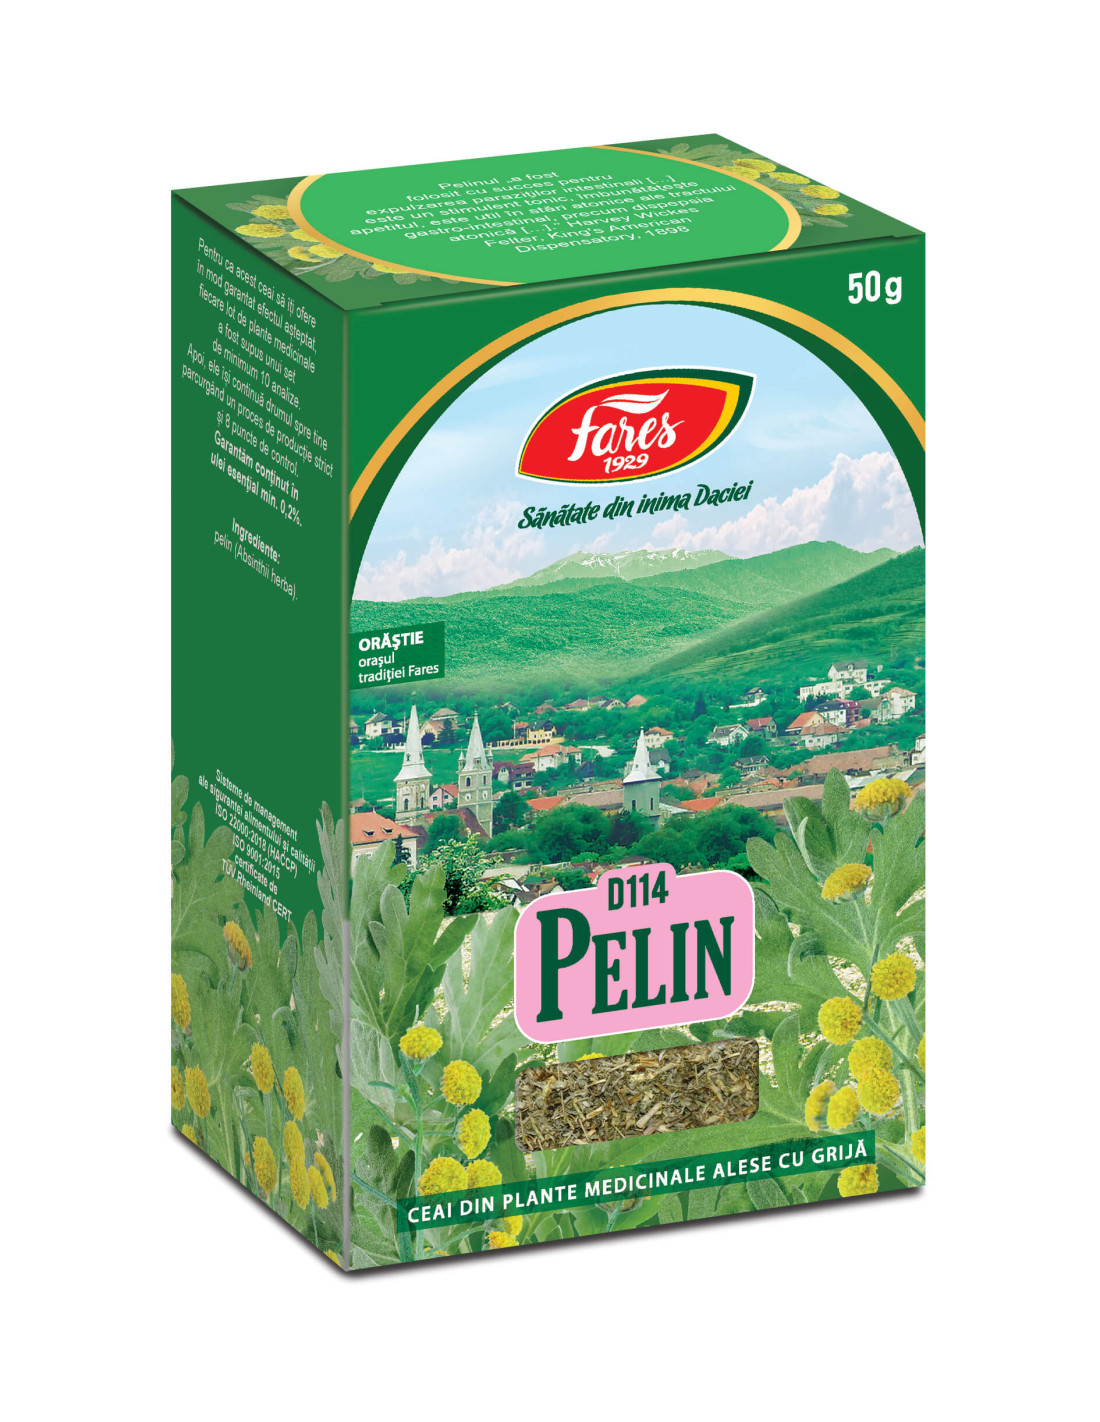 Ceaiuri - Ceai Pelin, 50 g, Fares, farmacieieftina.ro